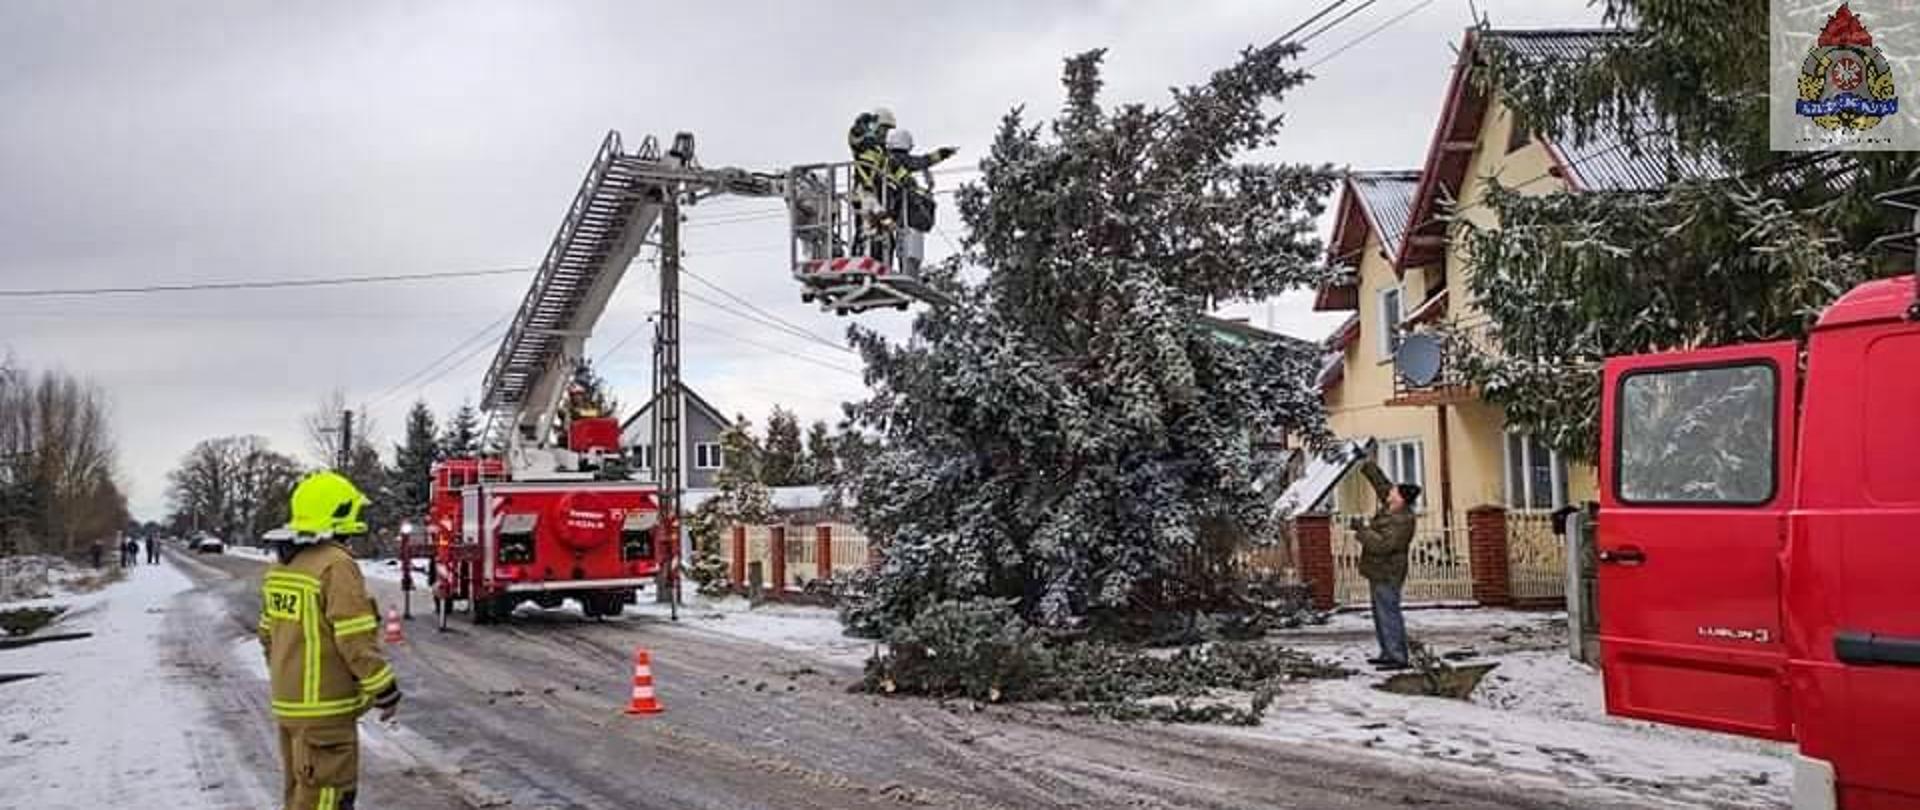 na zdjęciu strażacy usuwają powalone drzewo z linii energetycznej stojąc w kosztu podnośnika hydraulicznego, pojedynczy strażak stoi i blokuje ruch na ulicy w tle budynki droga i drzewa